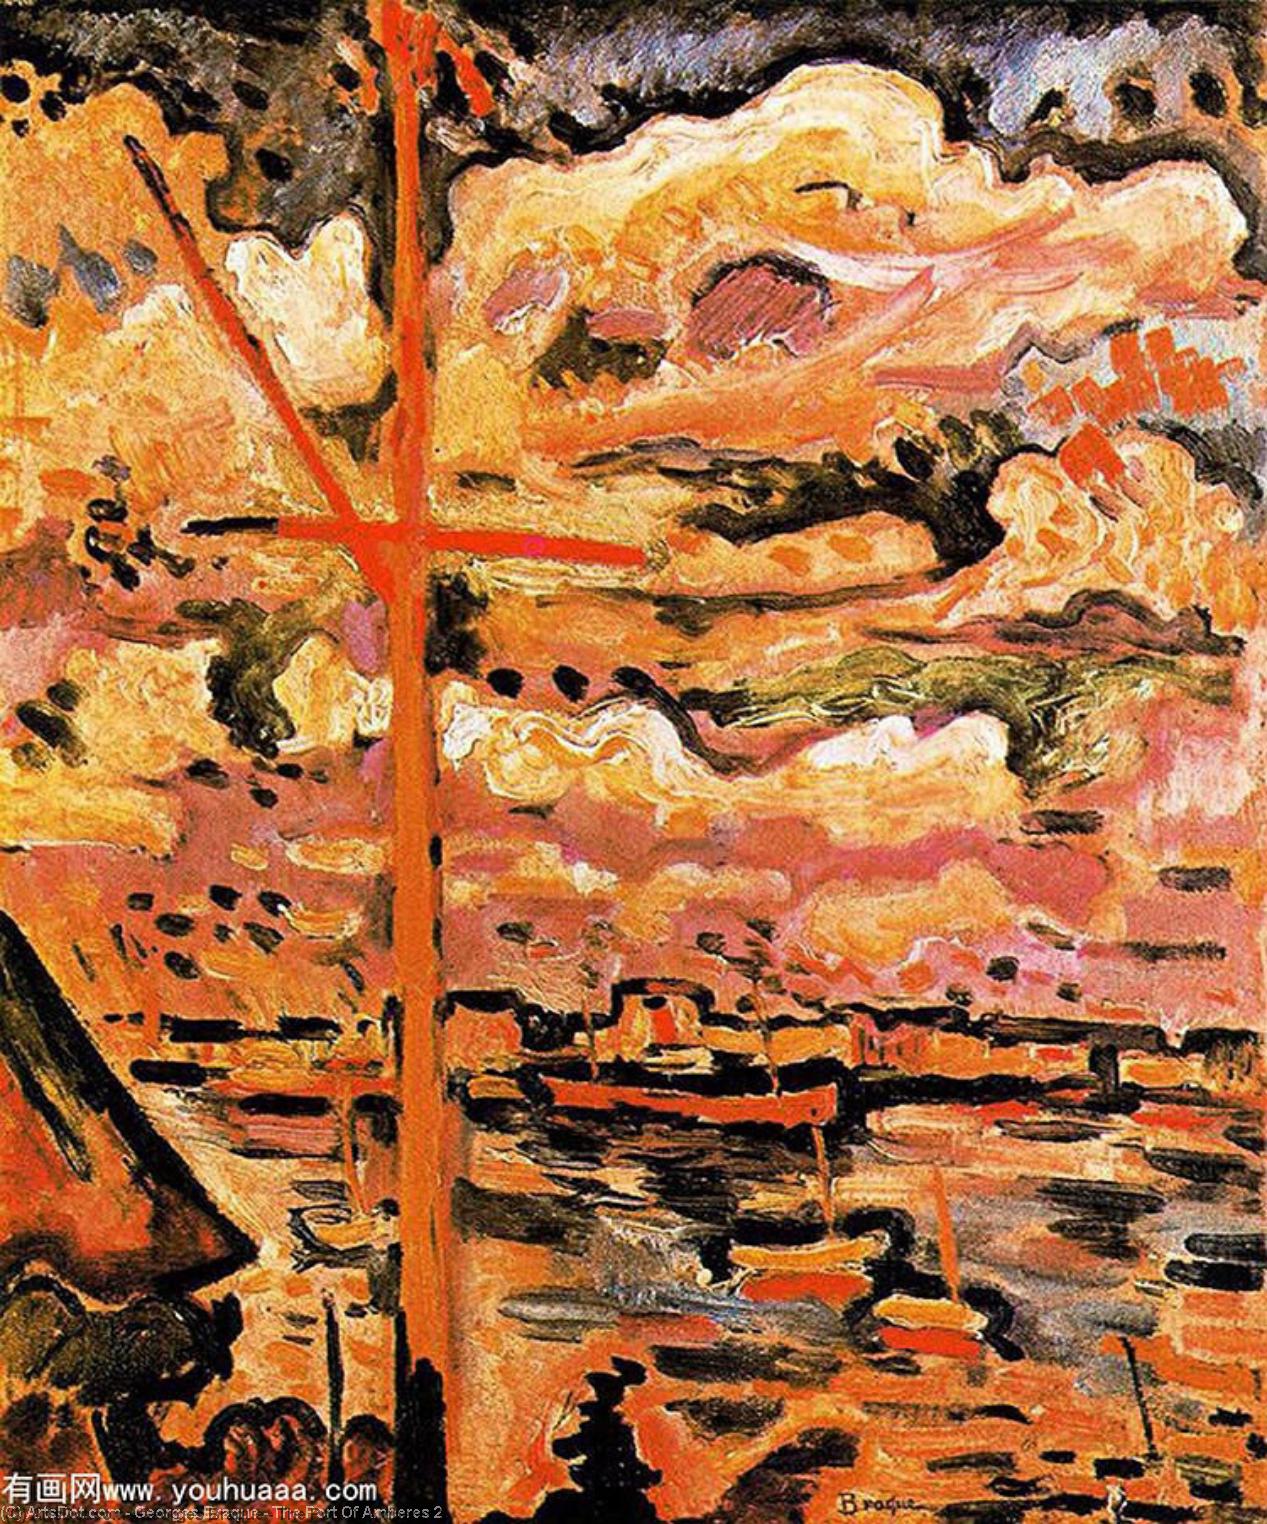 WikiOO.org - אנציקלופדיה לאמנויות יפות - ציור, יצירות אמנות Georges Braque - The Port Of Amberes 2